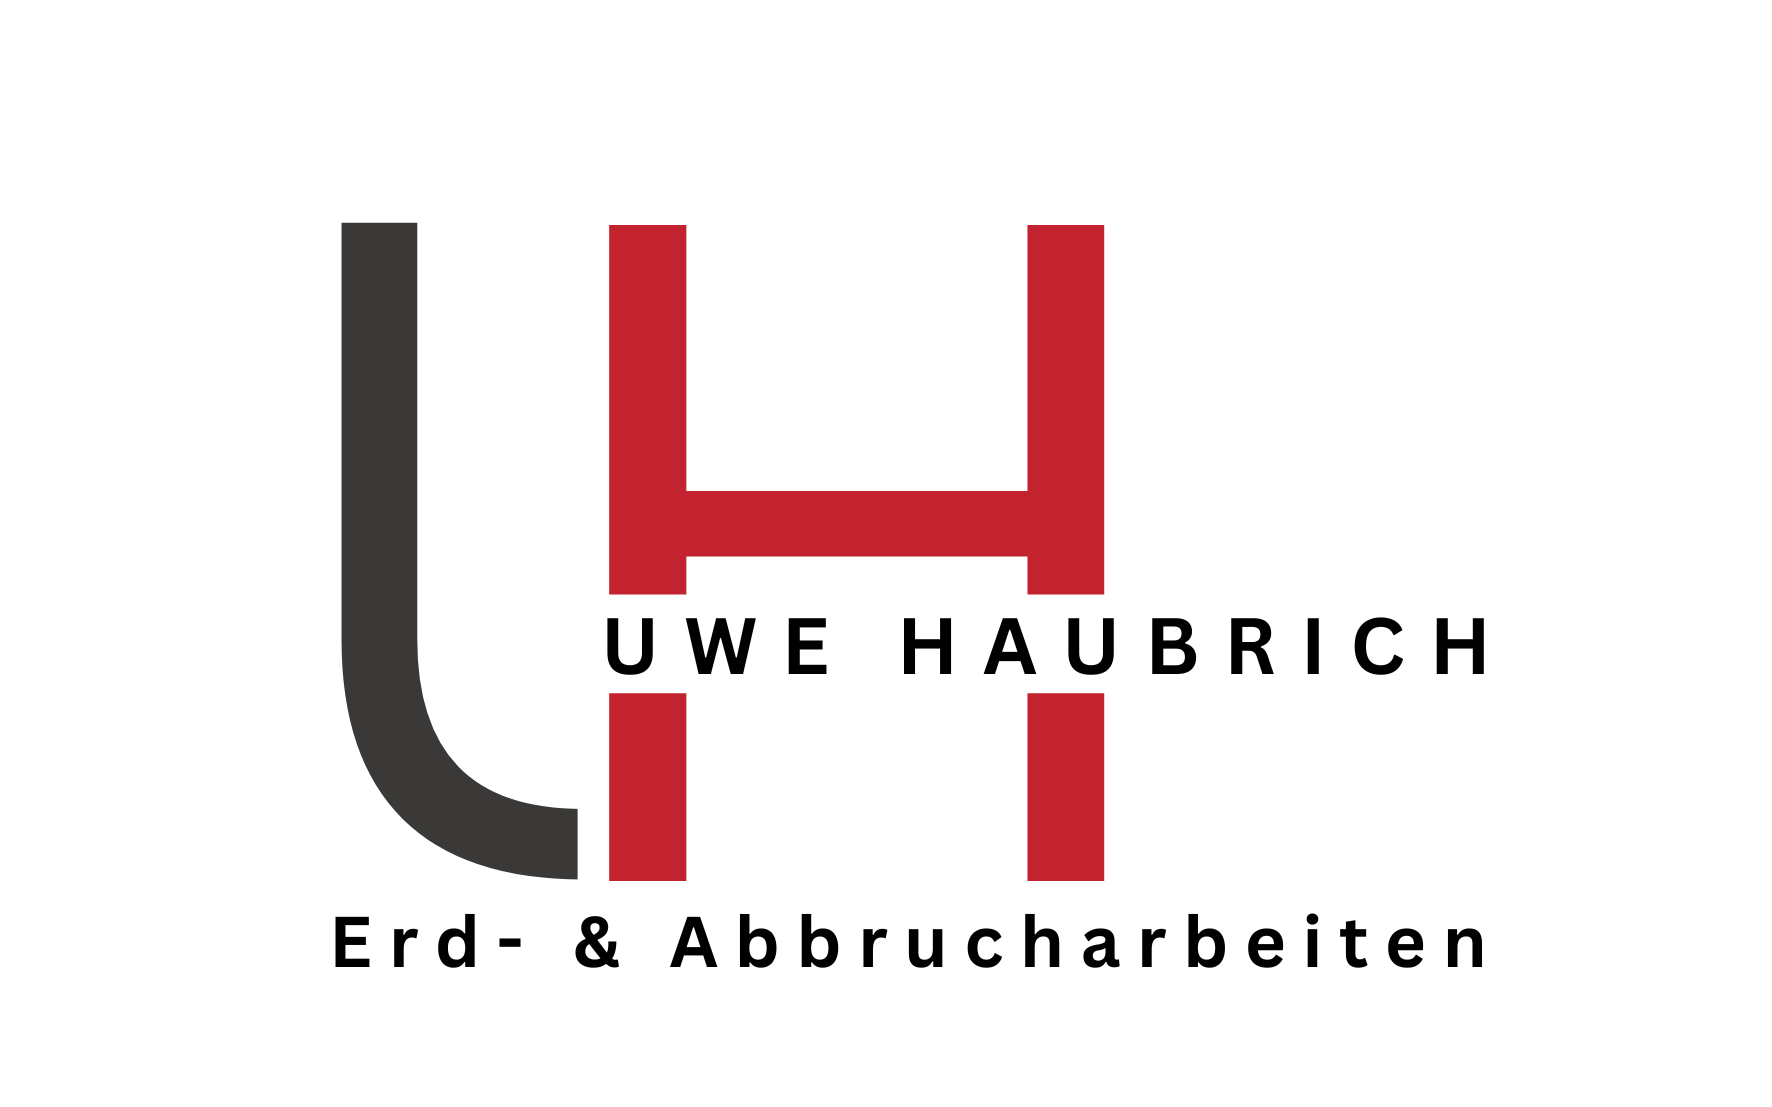 Uwe Haubrich - Erd- und Abbrucharbeiten in Rivenich